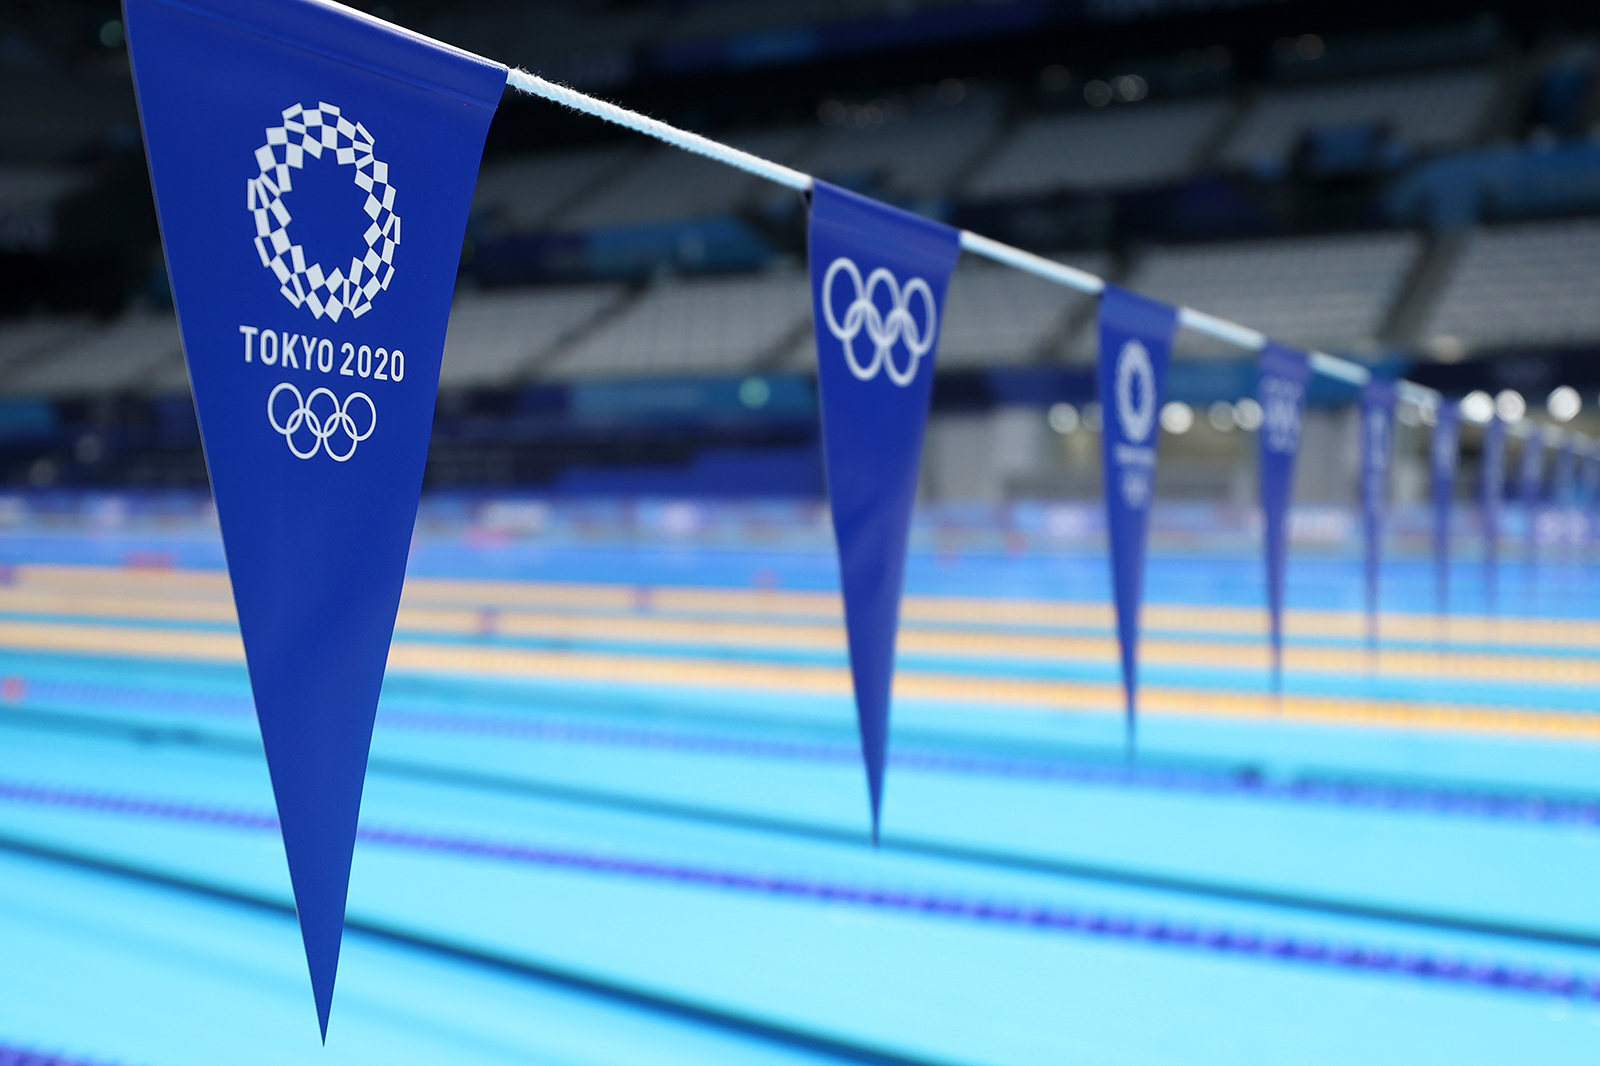 Bandeiras pairam sobre a piscina durante a sessão de treinamento aquático no Tokyo Aquatics Center antes dos Jogos Olímpicos de Tóquio 2020 em 22 de julho em Tóquio, Japão. 